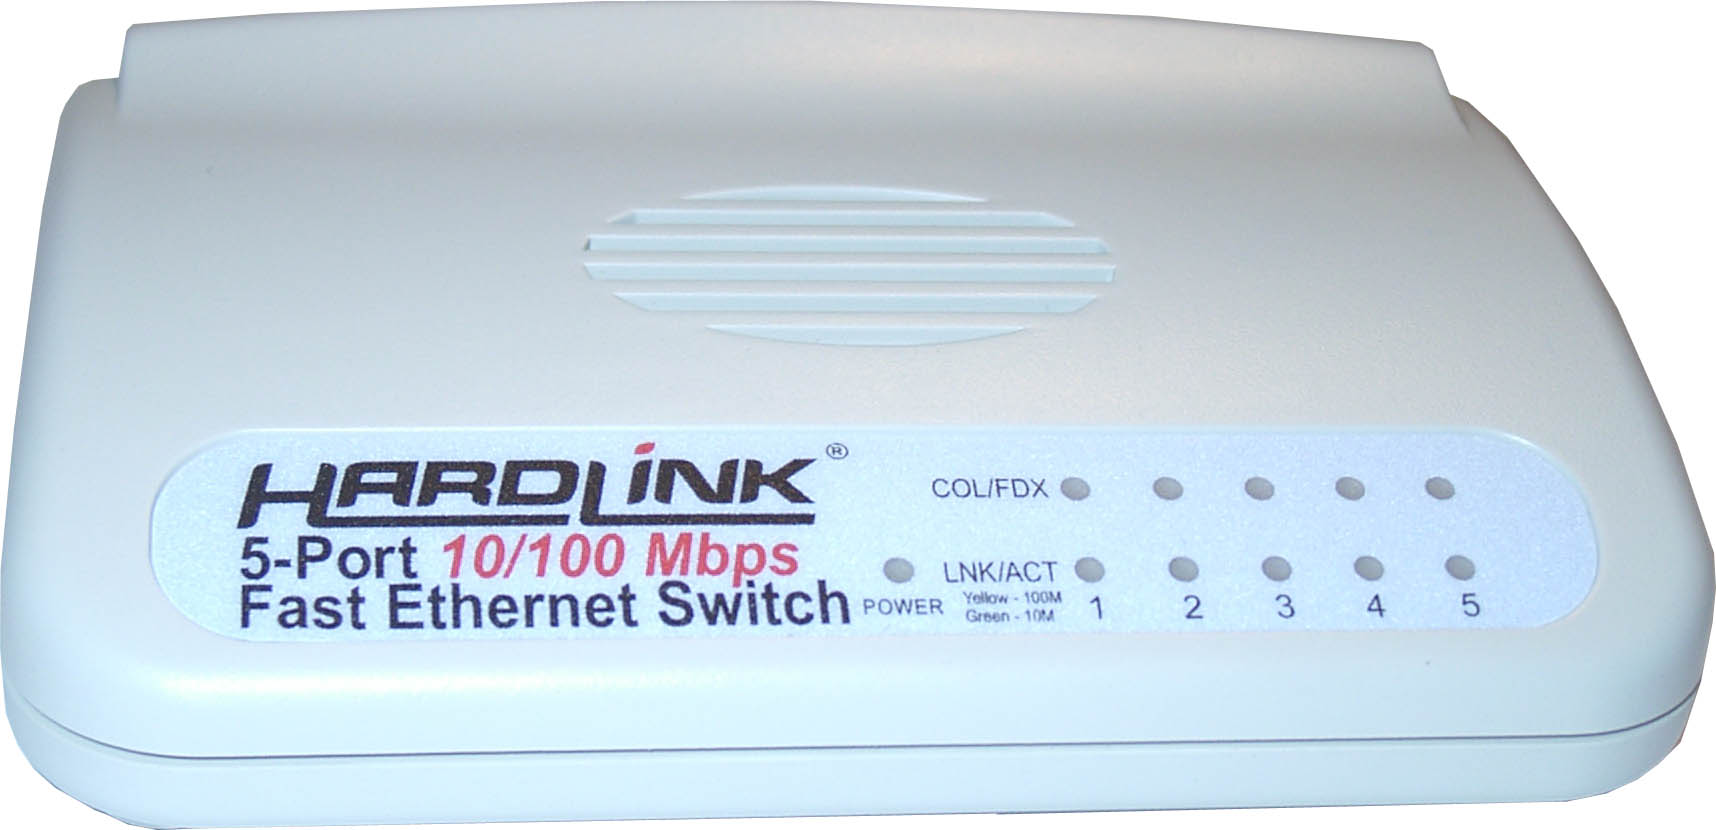 Фаст 100. Hardlink HS-16rl. Коммутатор HS 16d. Hardlink 16 Port fast Ethernet Switch. Hardlink HR-114.